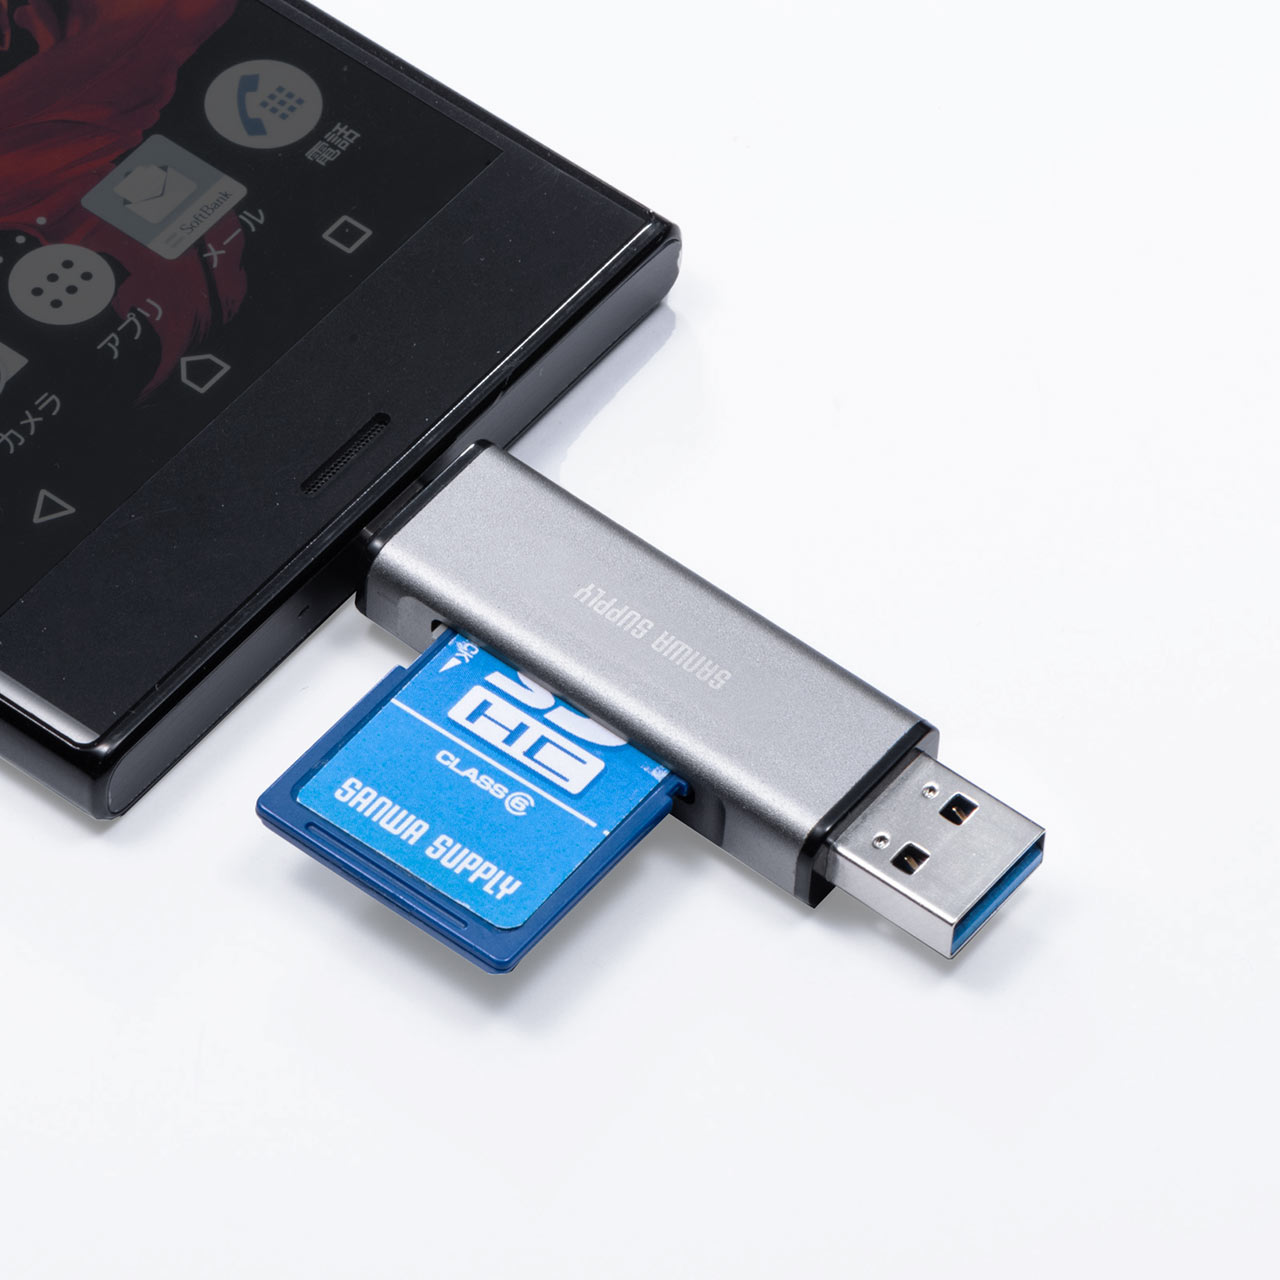 メディアケース付き SD/microSDカードリーダー USB 3.1 Gen1 USB A USB Type-C接続 400-ADR323GY